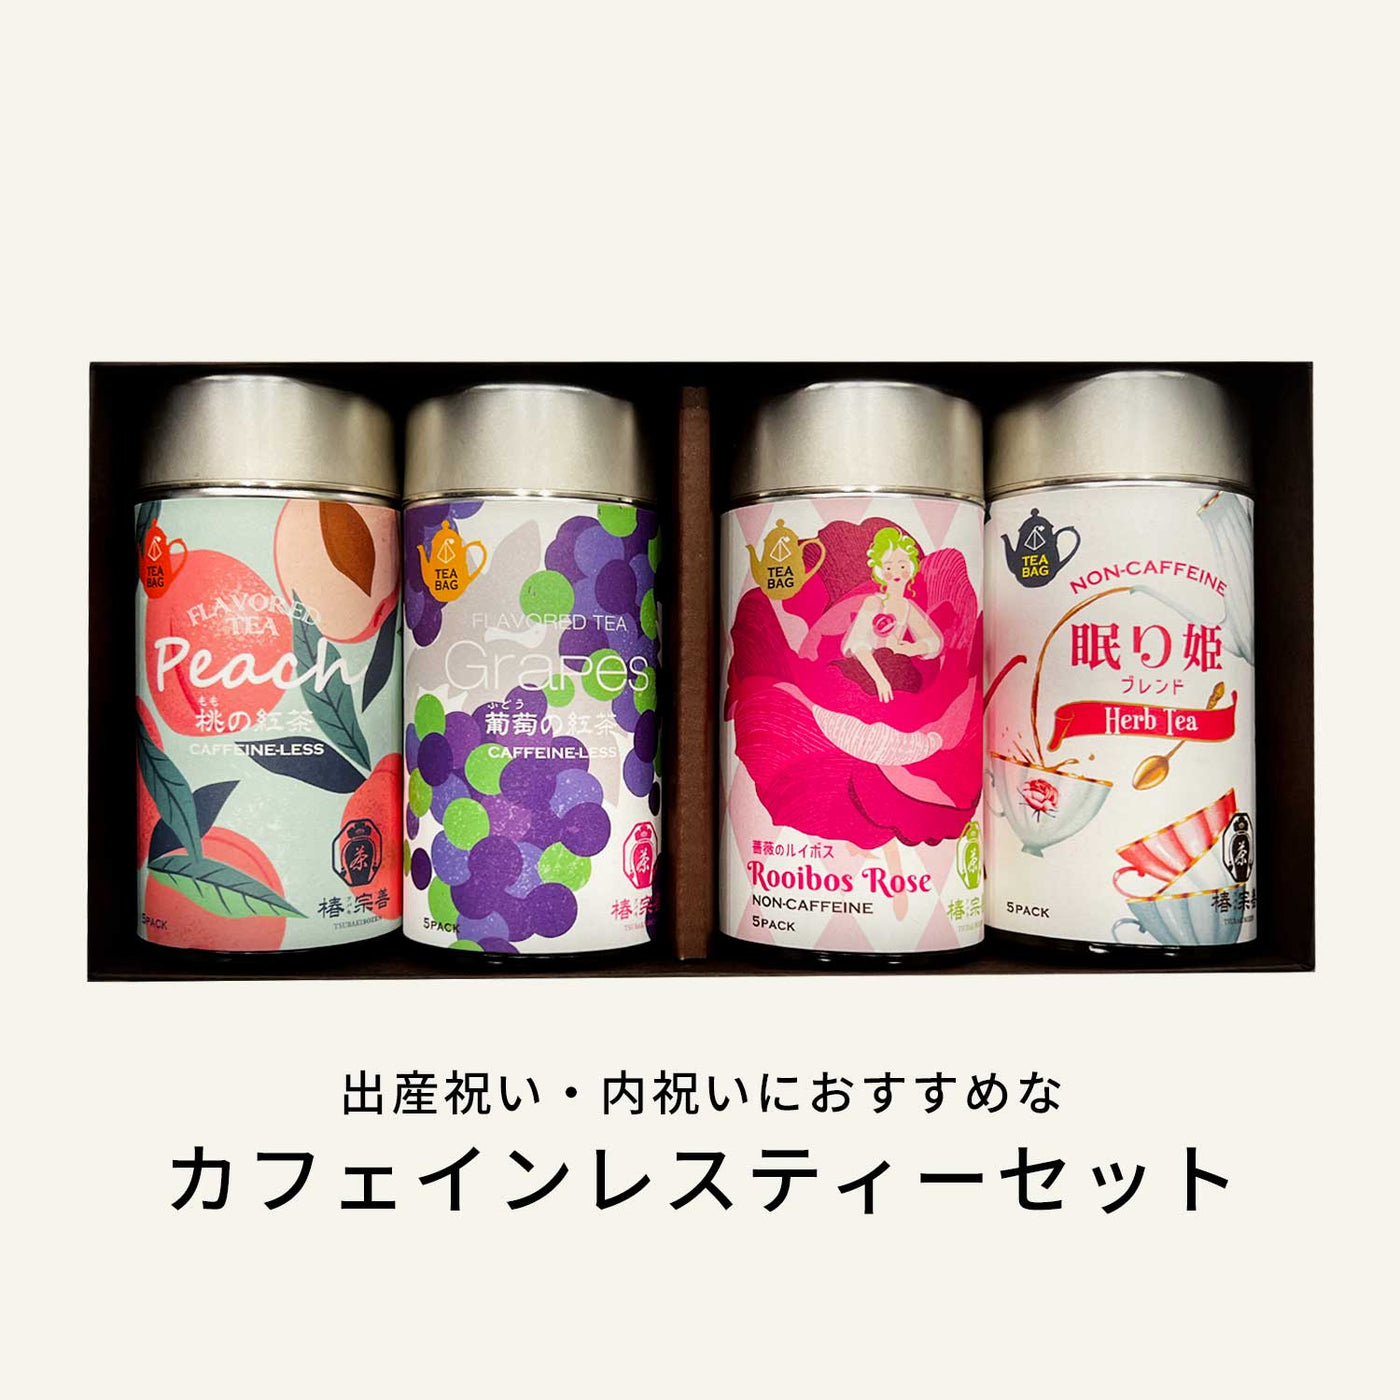 カフェインレスティー4缶ギフトセット【出産内祝い・出産お祝いに人気】